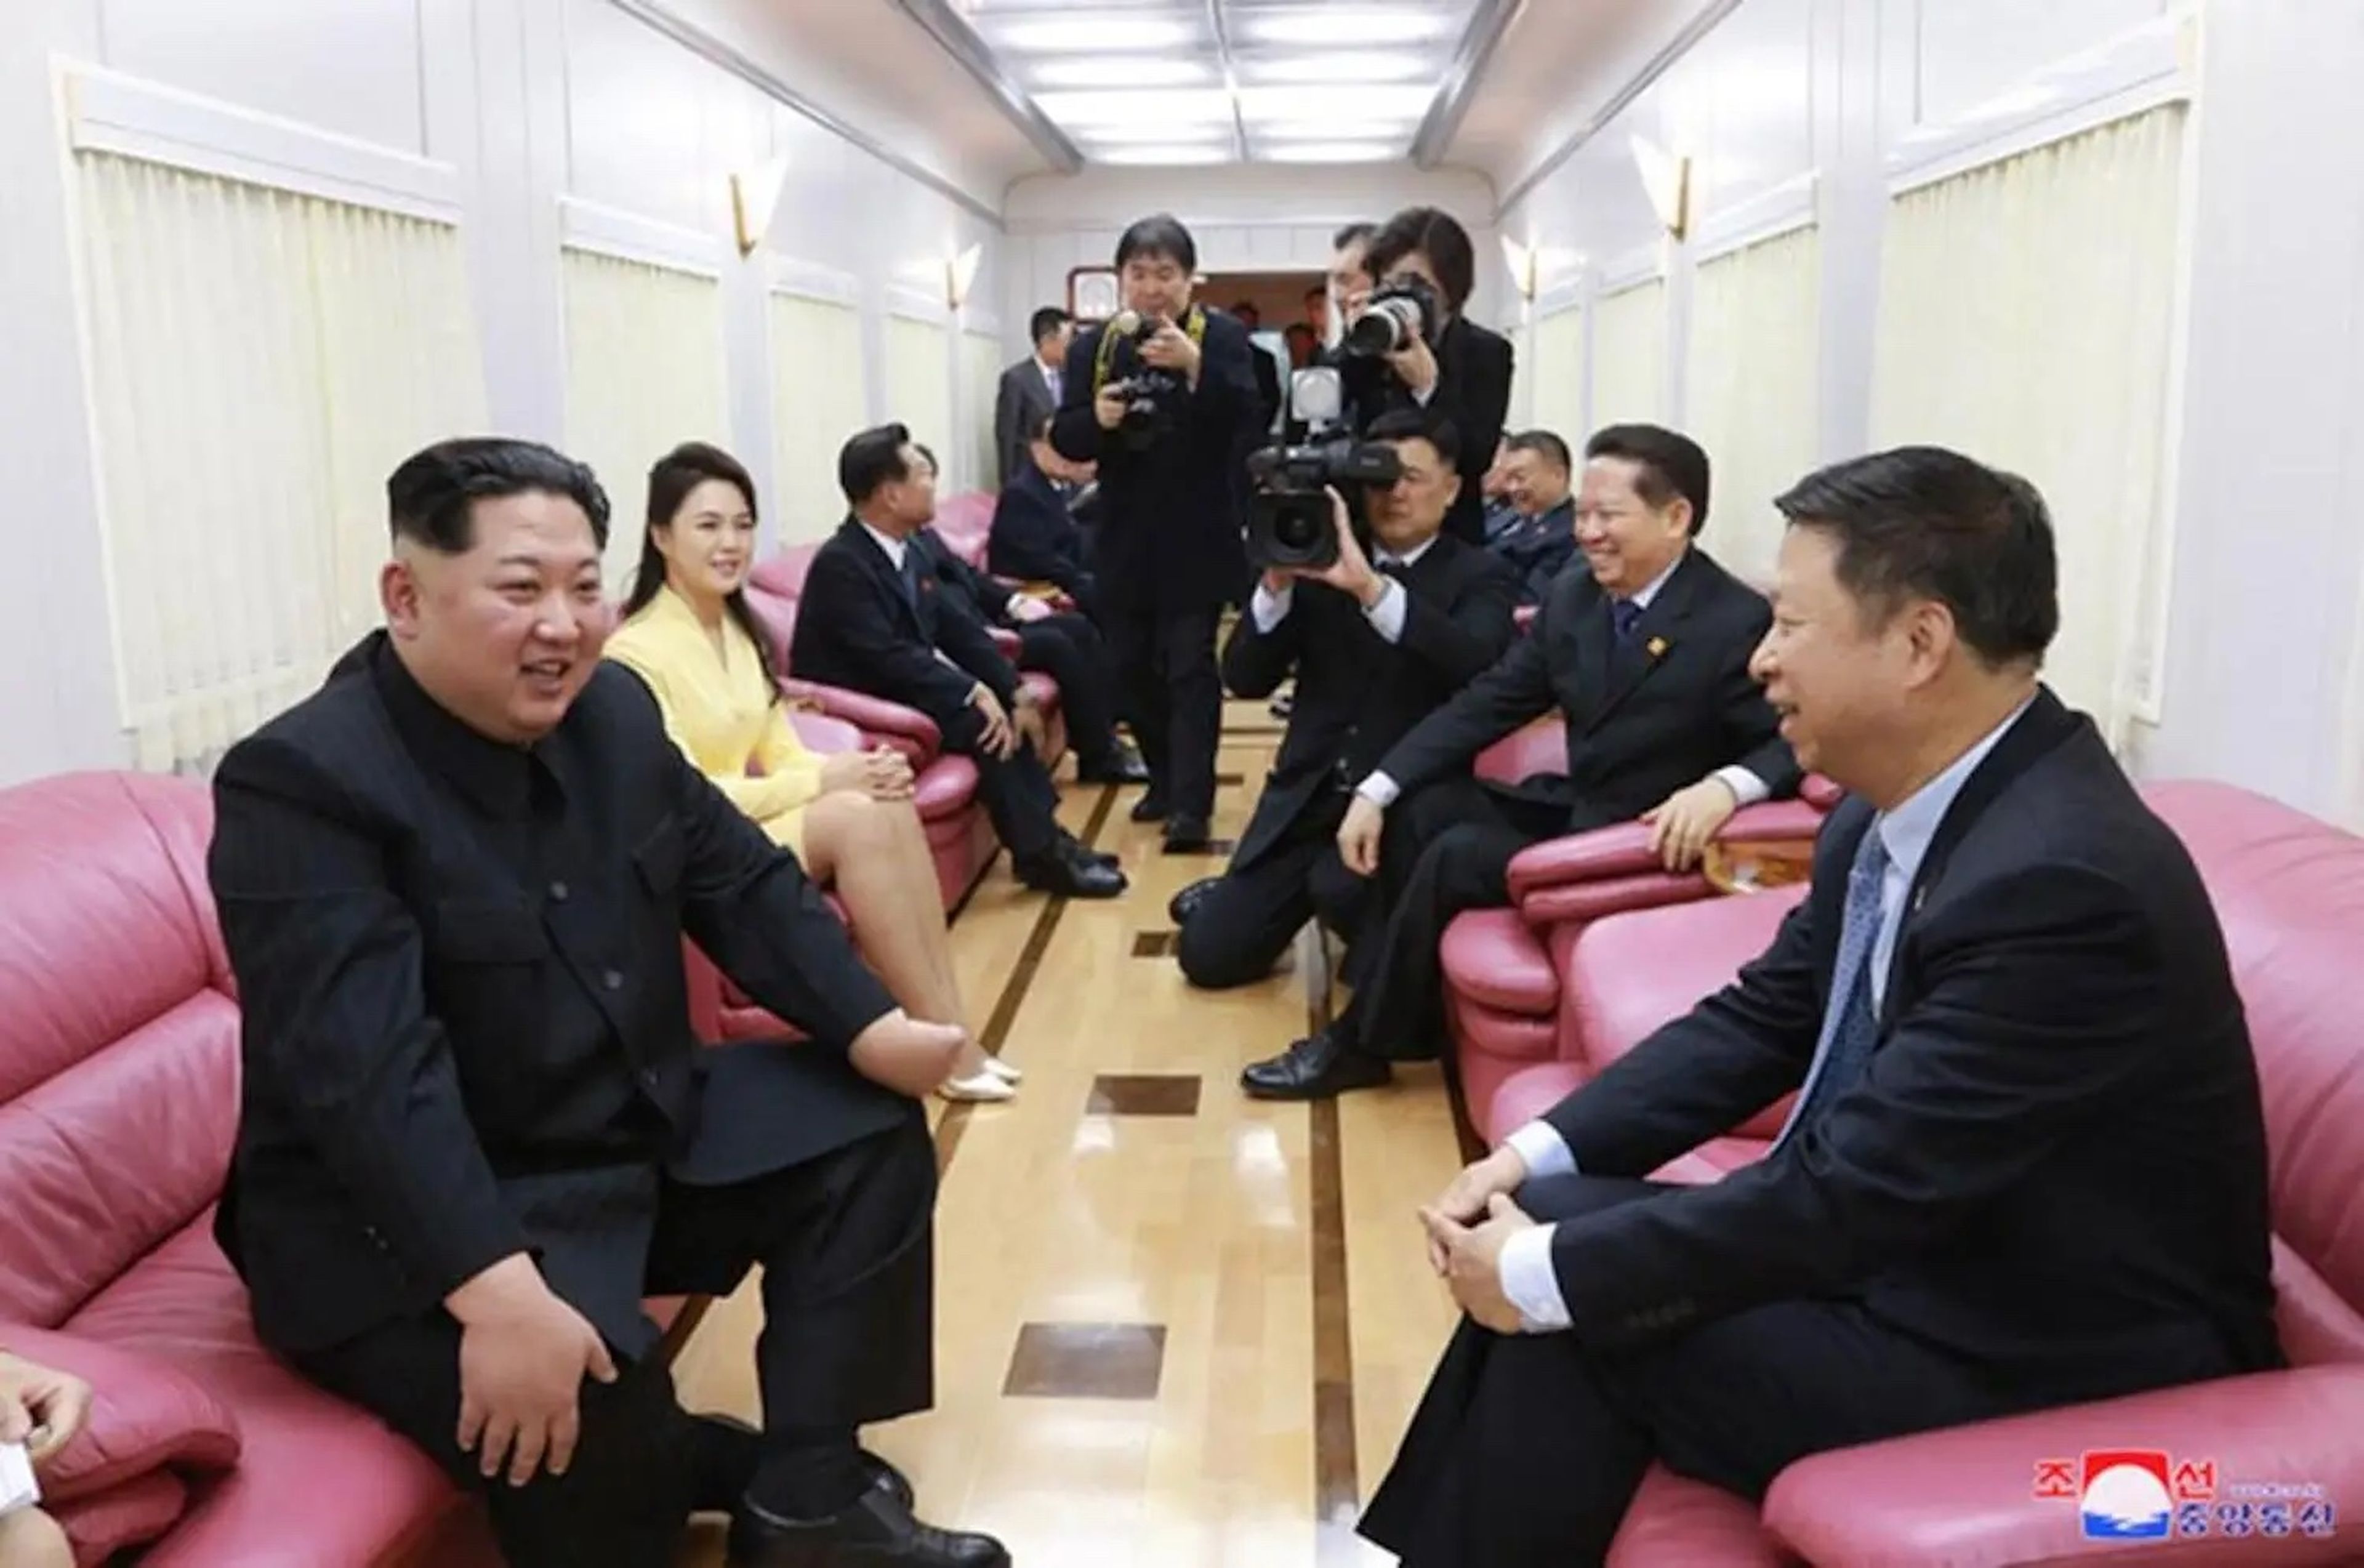 Aquí están Kim, su esposa Ri Sol Ju y otros funcionarios sentados en los sillones rosas de cuero.